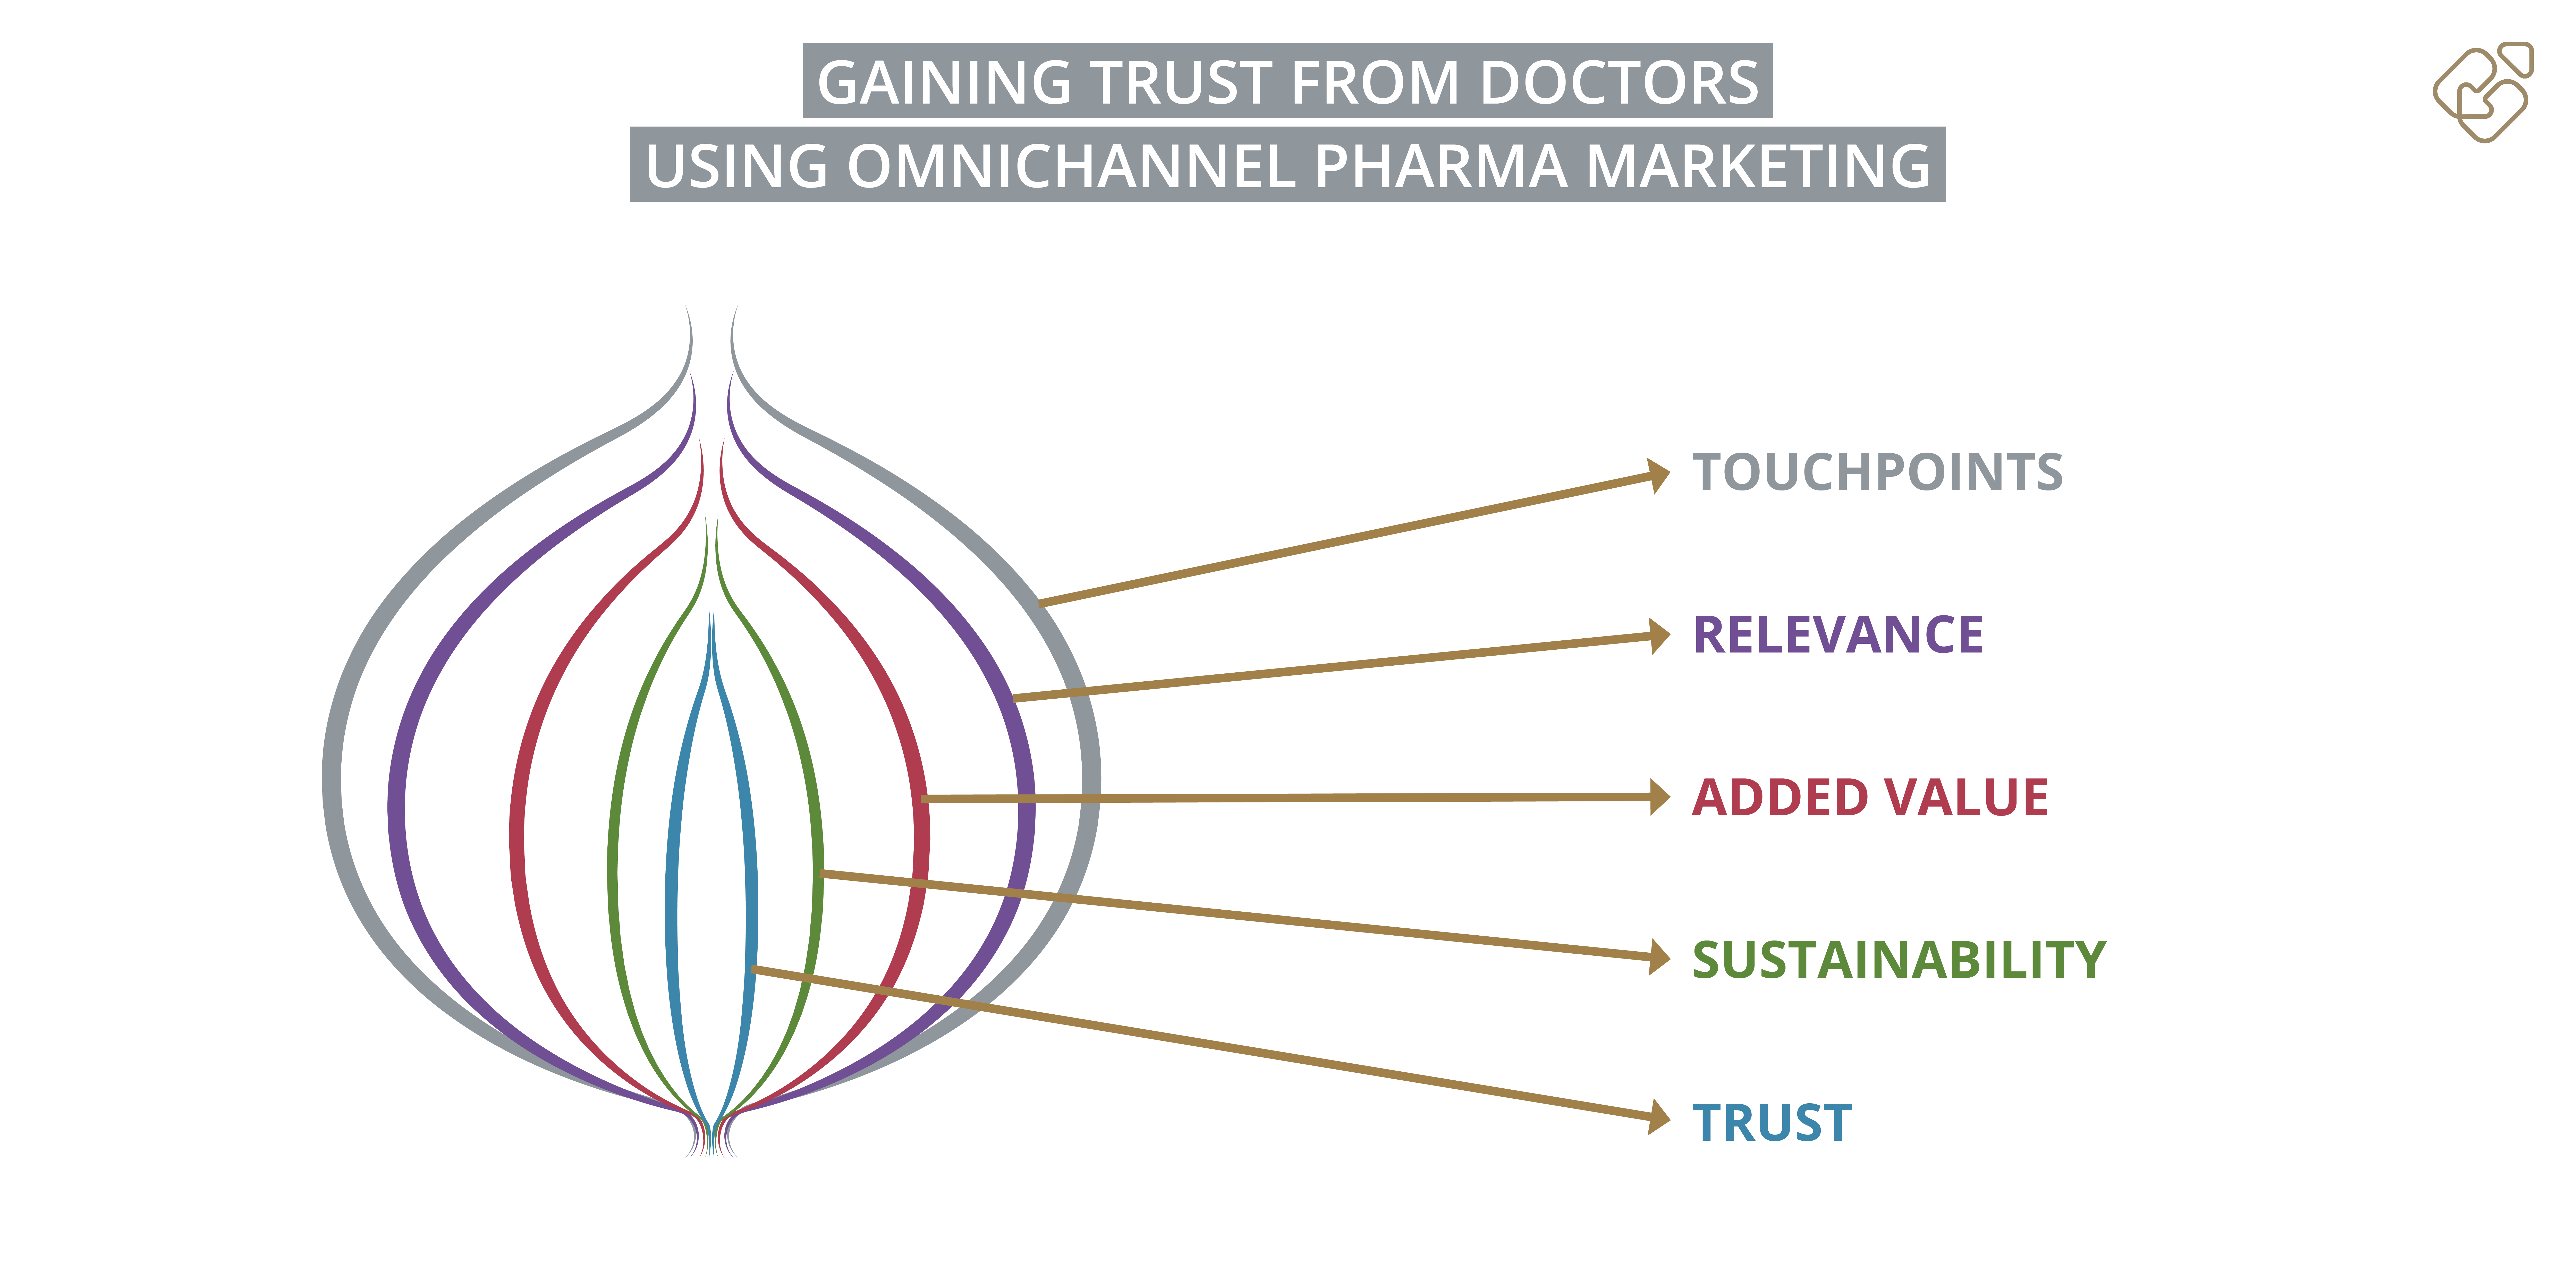 Vertrauen von Ärzten gewinnen im Omnichannel Pharma Marketing